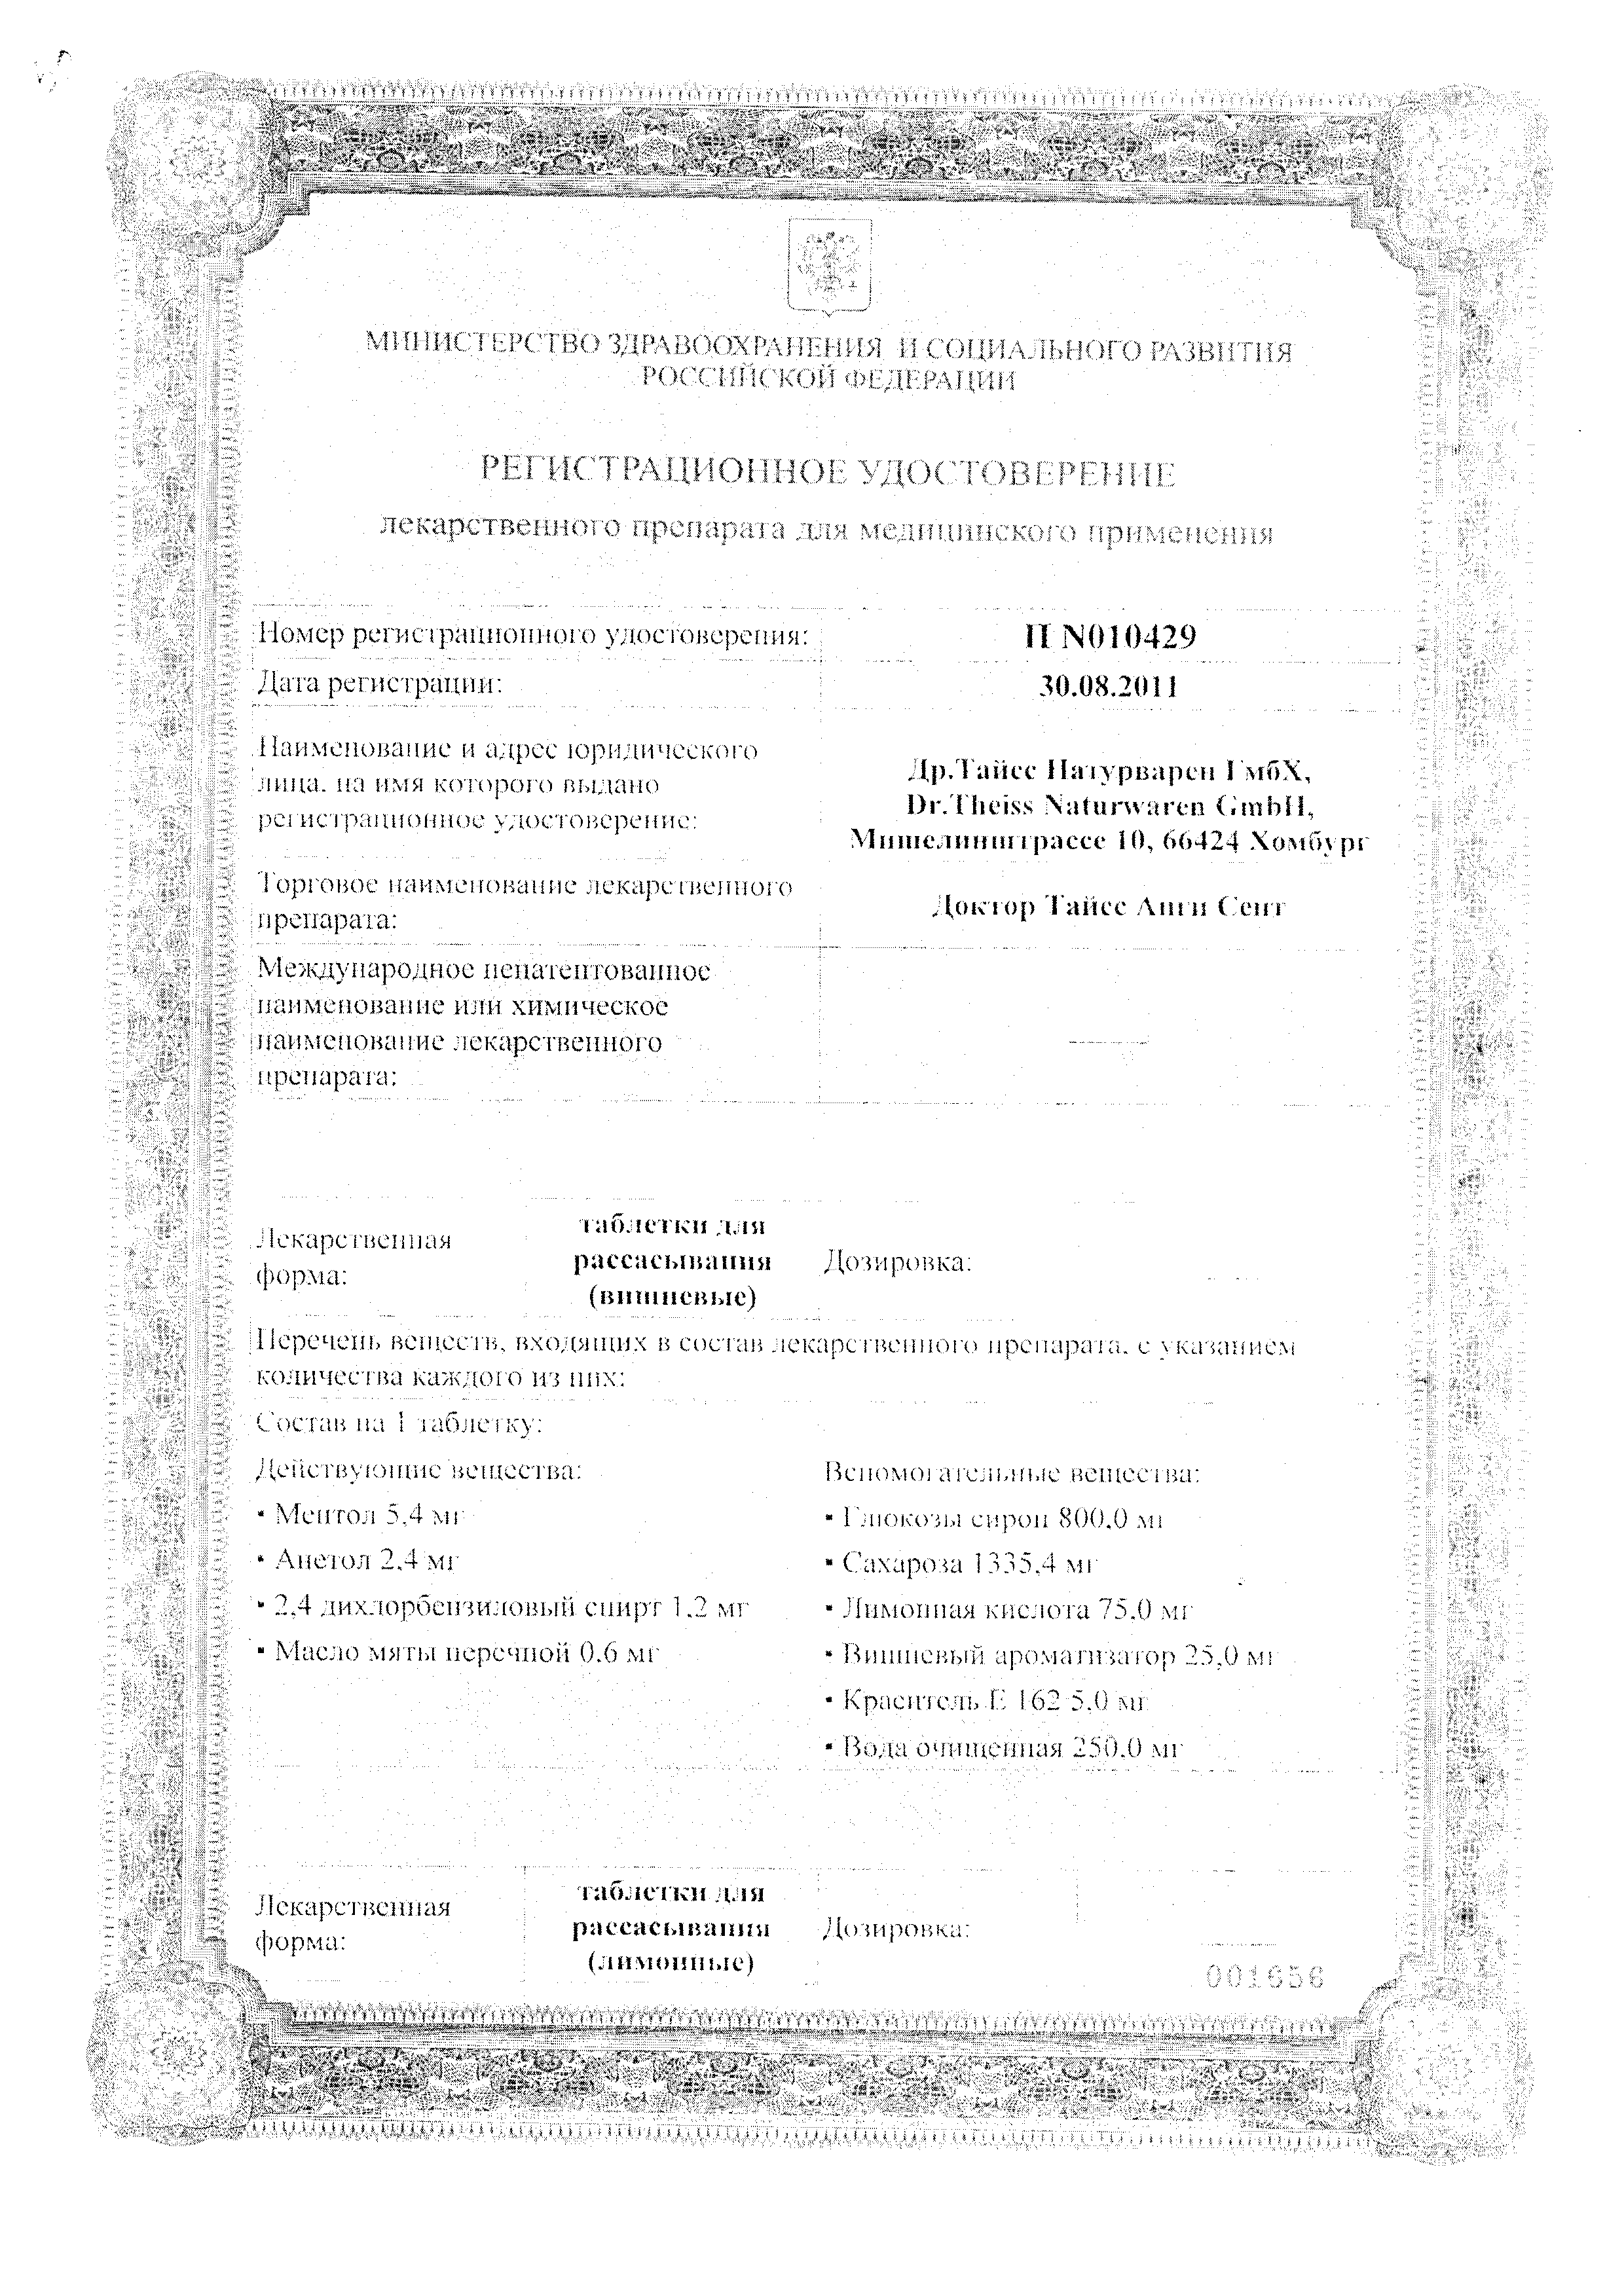 Доктор Тайсс Анги Септ сертификат